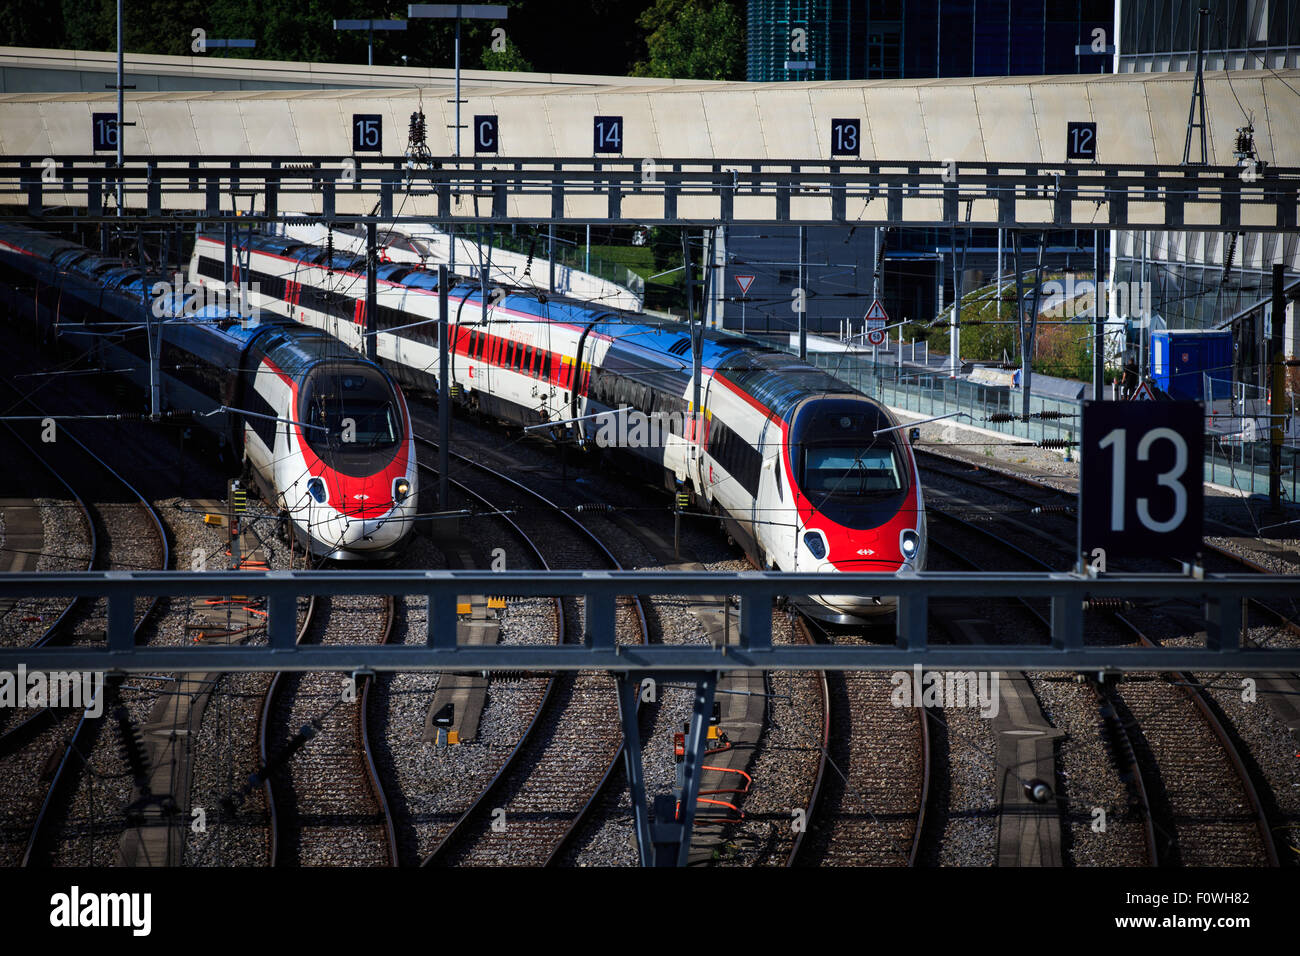 Ginevra, Svizzera. 21 Ago, 2015. I treni sono visibili presso la stazione di Secheron a Ginevra, Svizzera, Agosto 21, 2015. Secondo i dati raccolti dall'Unione internazionale delle ferrovie, la Svizzera ha preso il primo posto in tutto il mondo come 2,228 chilometri sono state percorse da ciascun passeggero in treno nel 2014, seguita dal Giappone con 2042 chilometri. Ferrovie Federali Svizzere è uno dei più puntuale e affidabile dei servizi ferroviari nel mondo. © Xu Jinquan/Xinhua/Alamy Live News Foto Stock